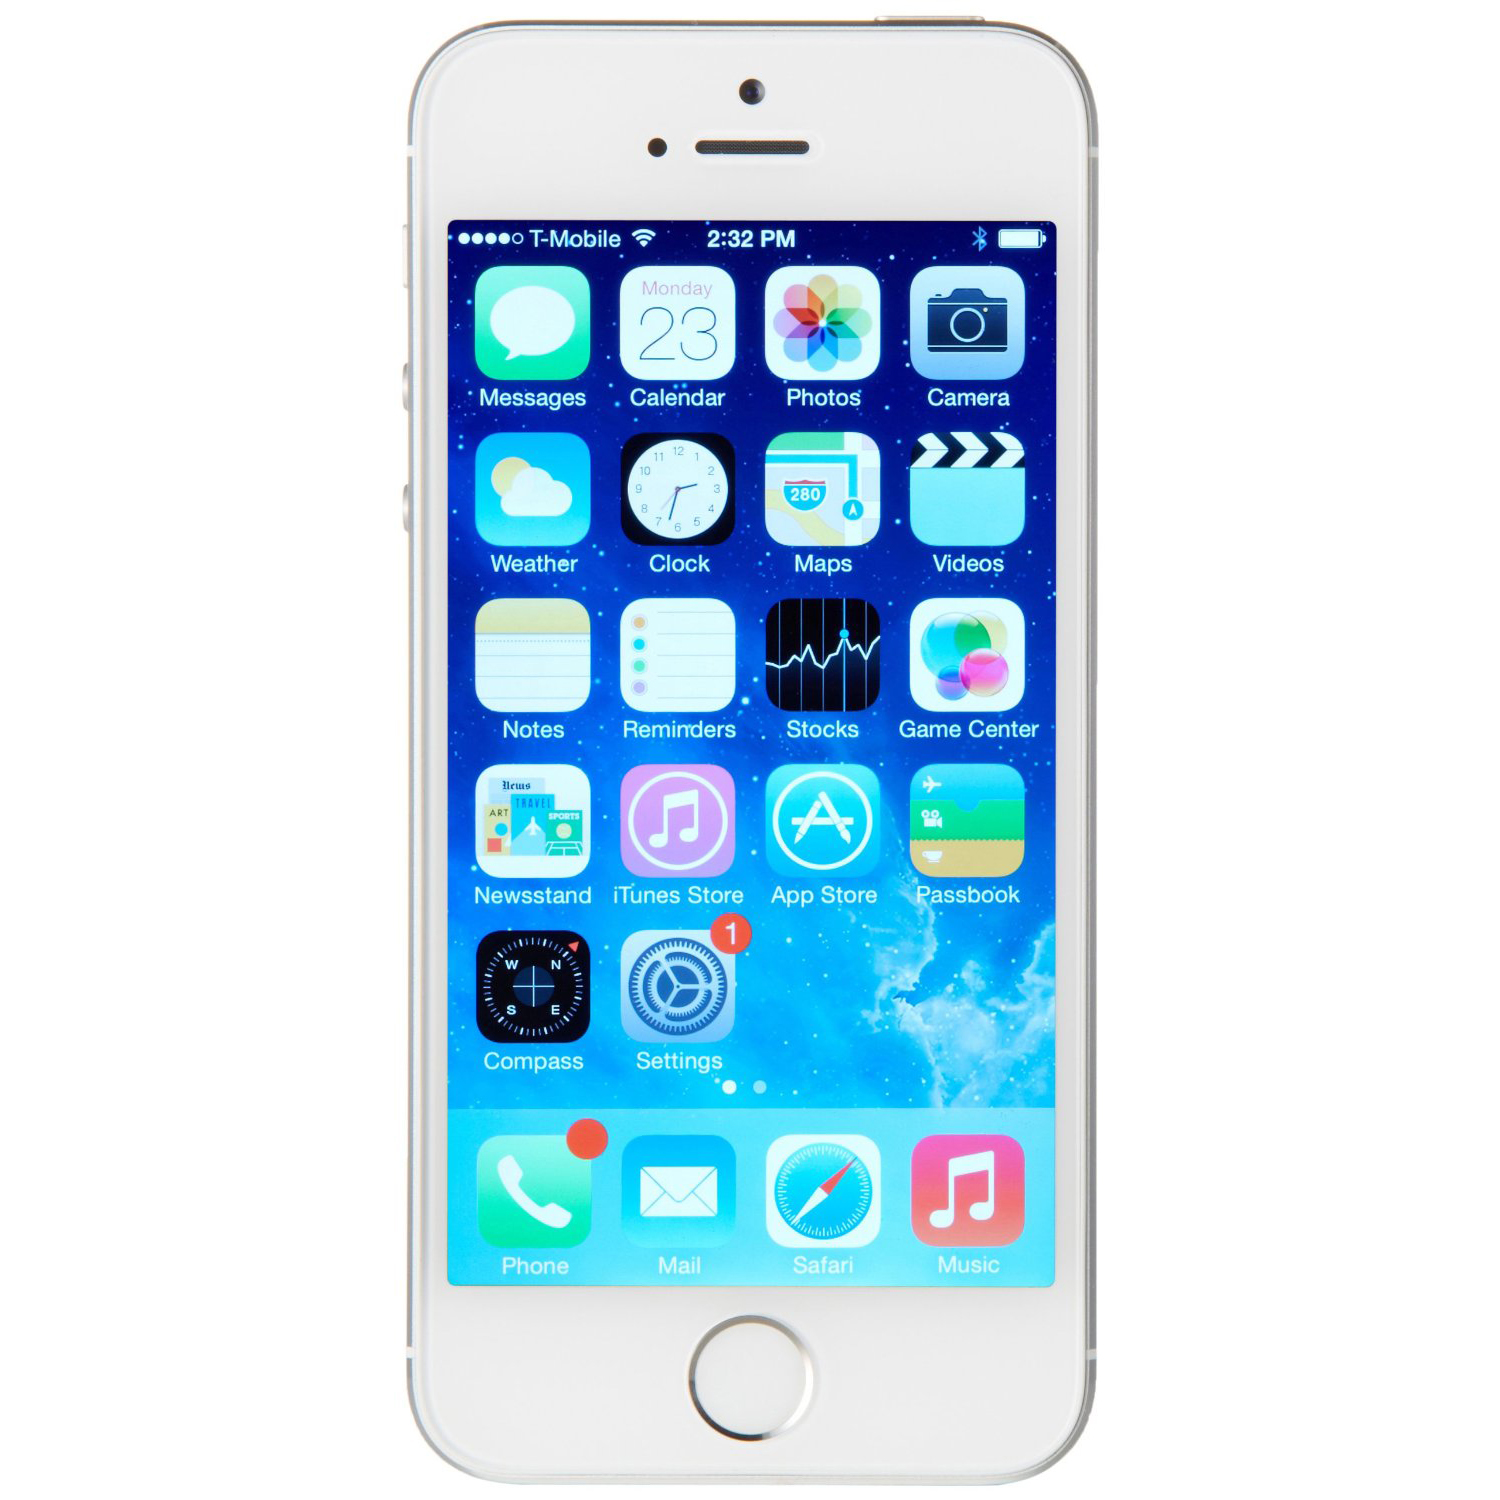 Apple iphone 16gb. Apple iphone 5s. Apple iphone 5s 16gb. Apple iphone 5s 32gb. Apple iphone 5s 32gb Silver.